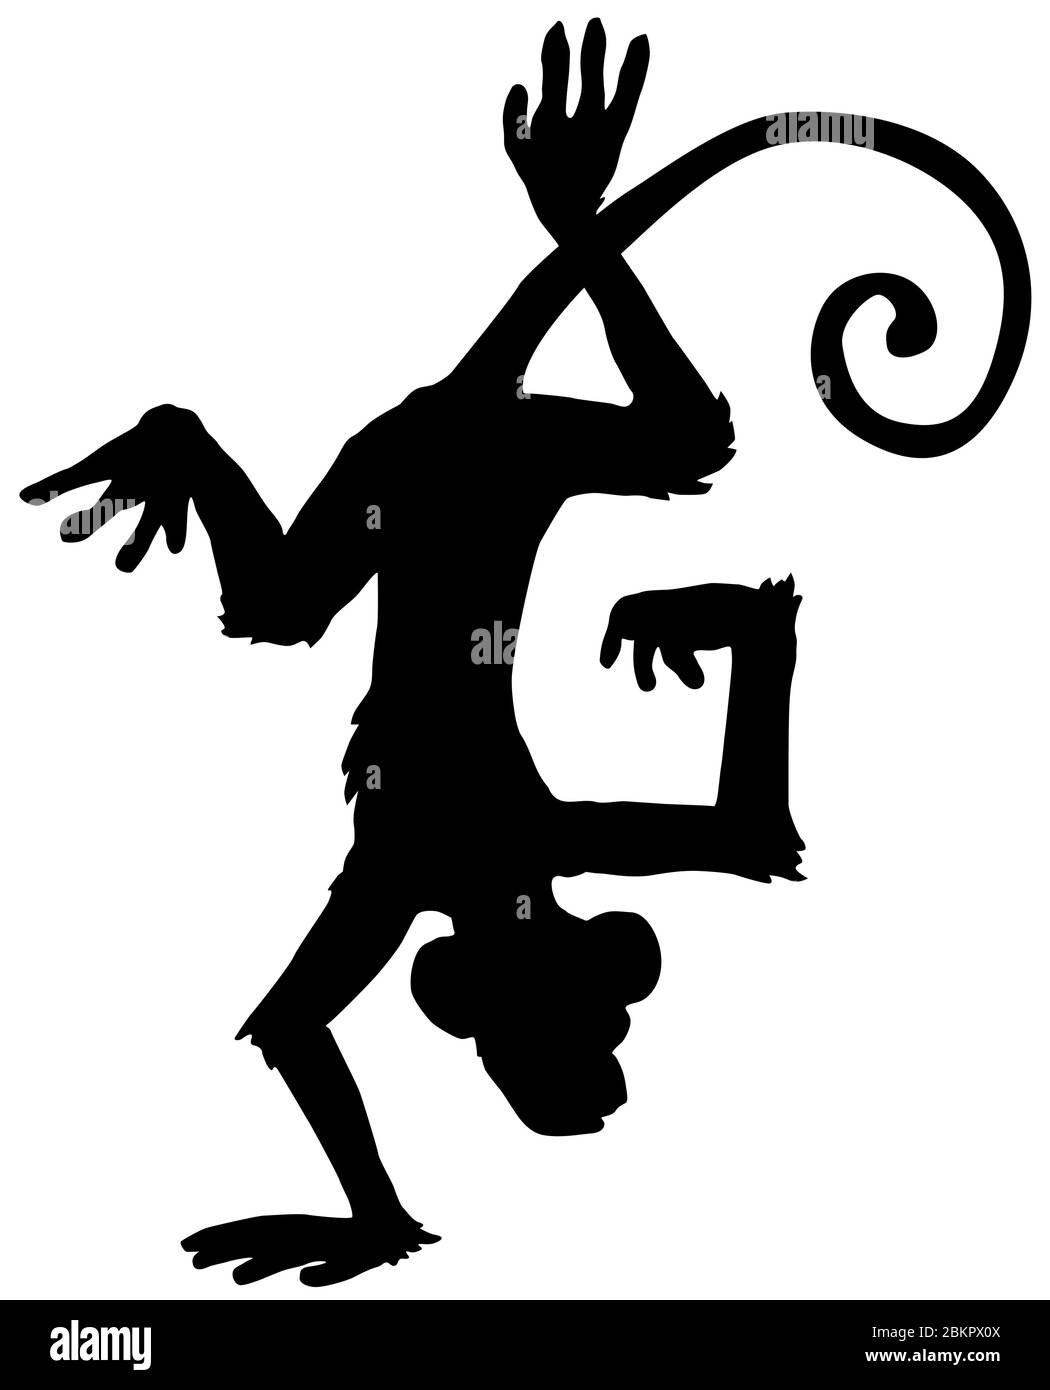 Pied de main de singe à l'envers acrobatique, personnage de dessin animé silhouette noire, illustration vectorielle, vertical, isolé, sur blanc Illustration de Vecteur